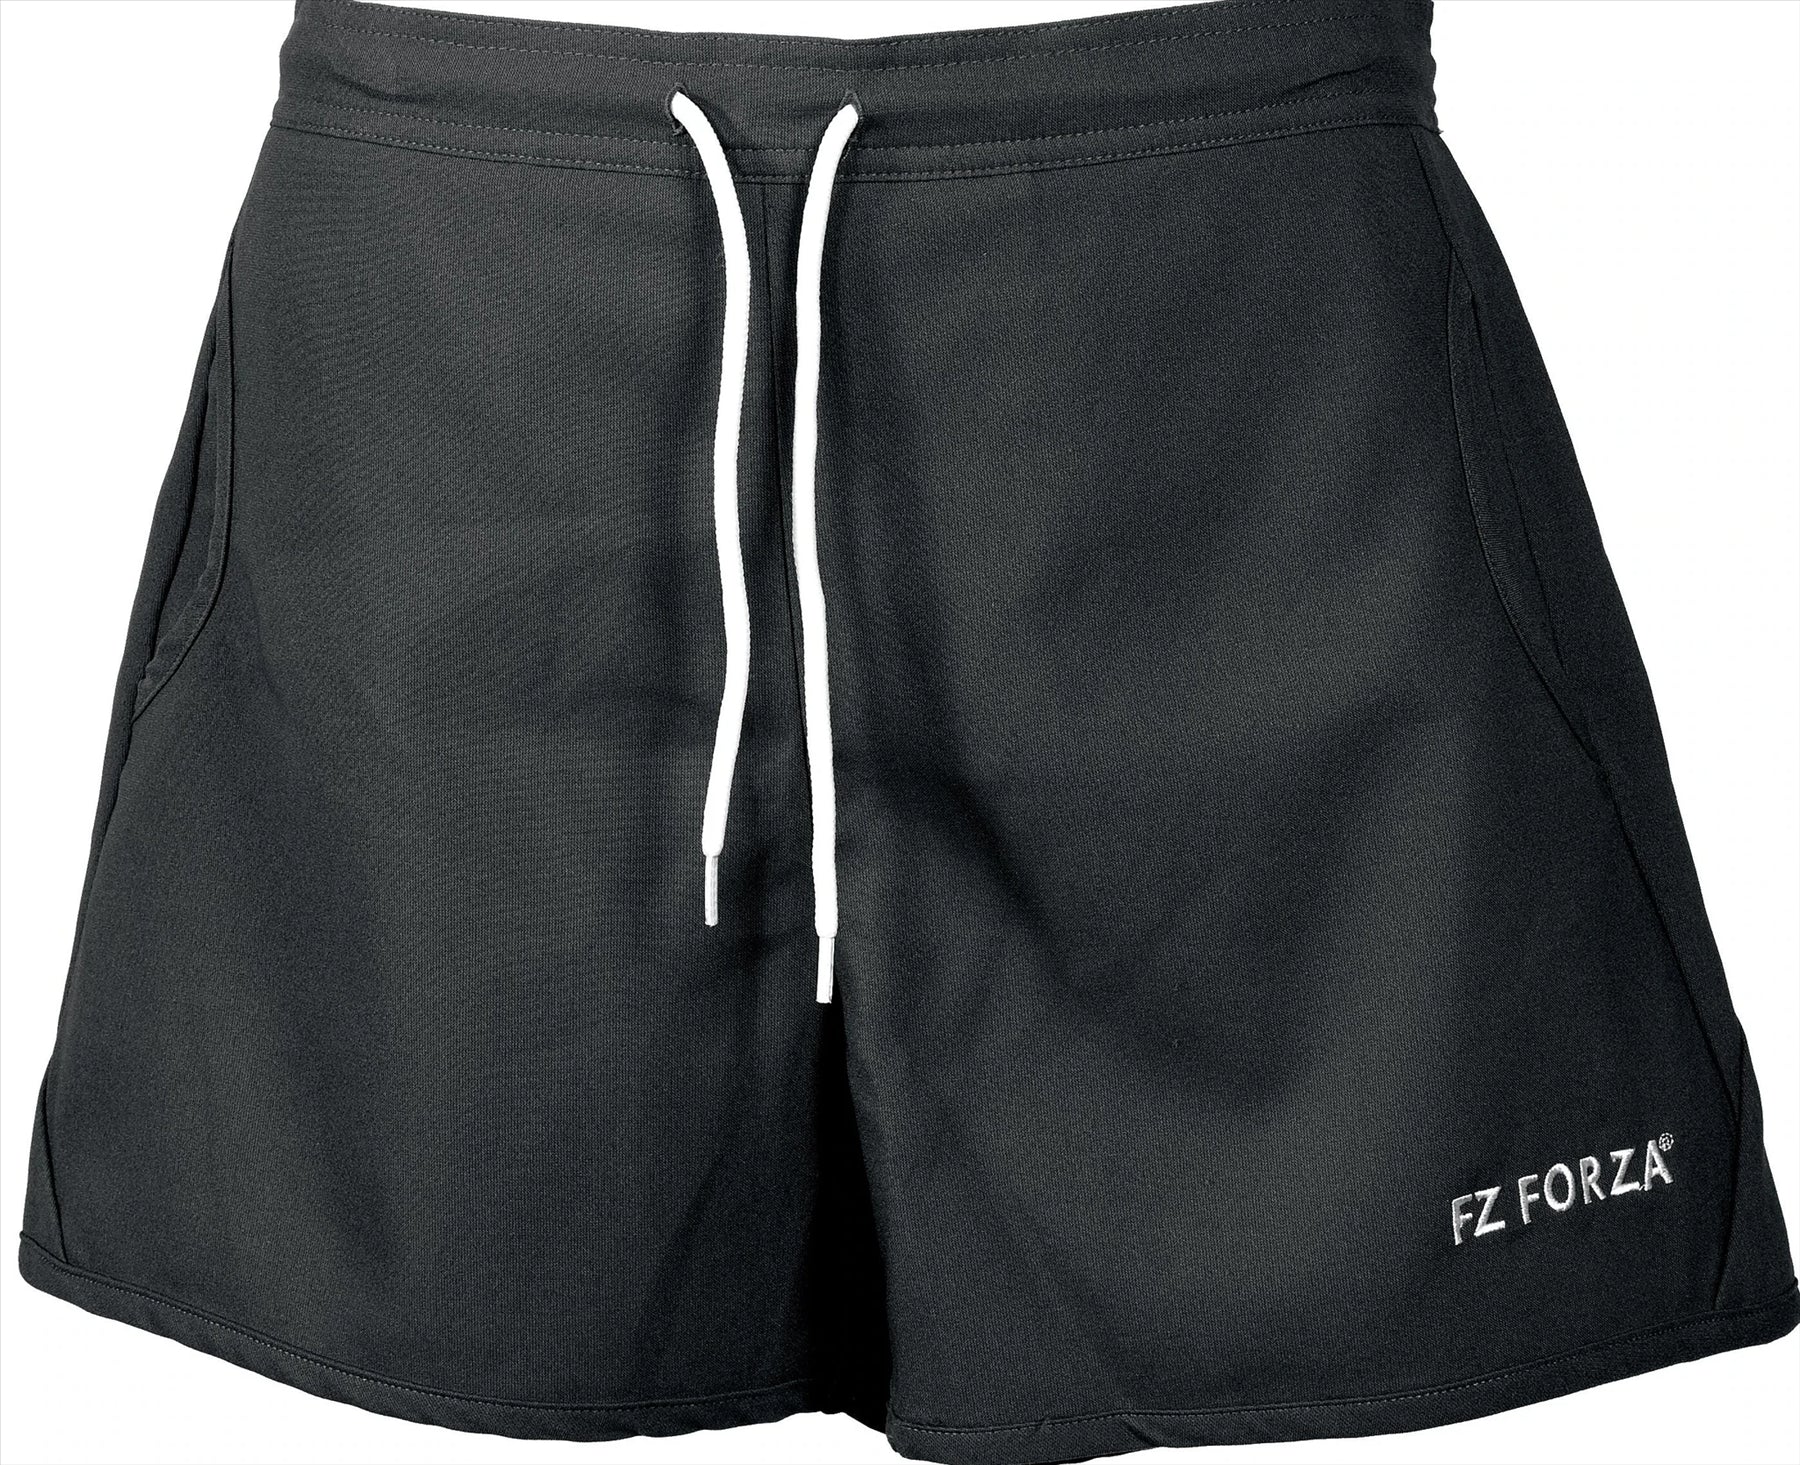 FZ Forza Pianna Womens Badminton Shorts - Black